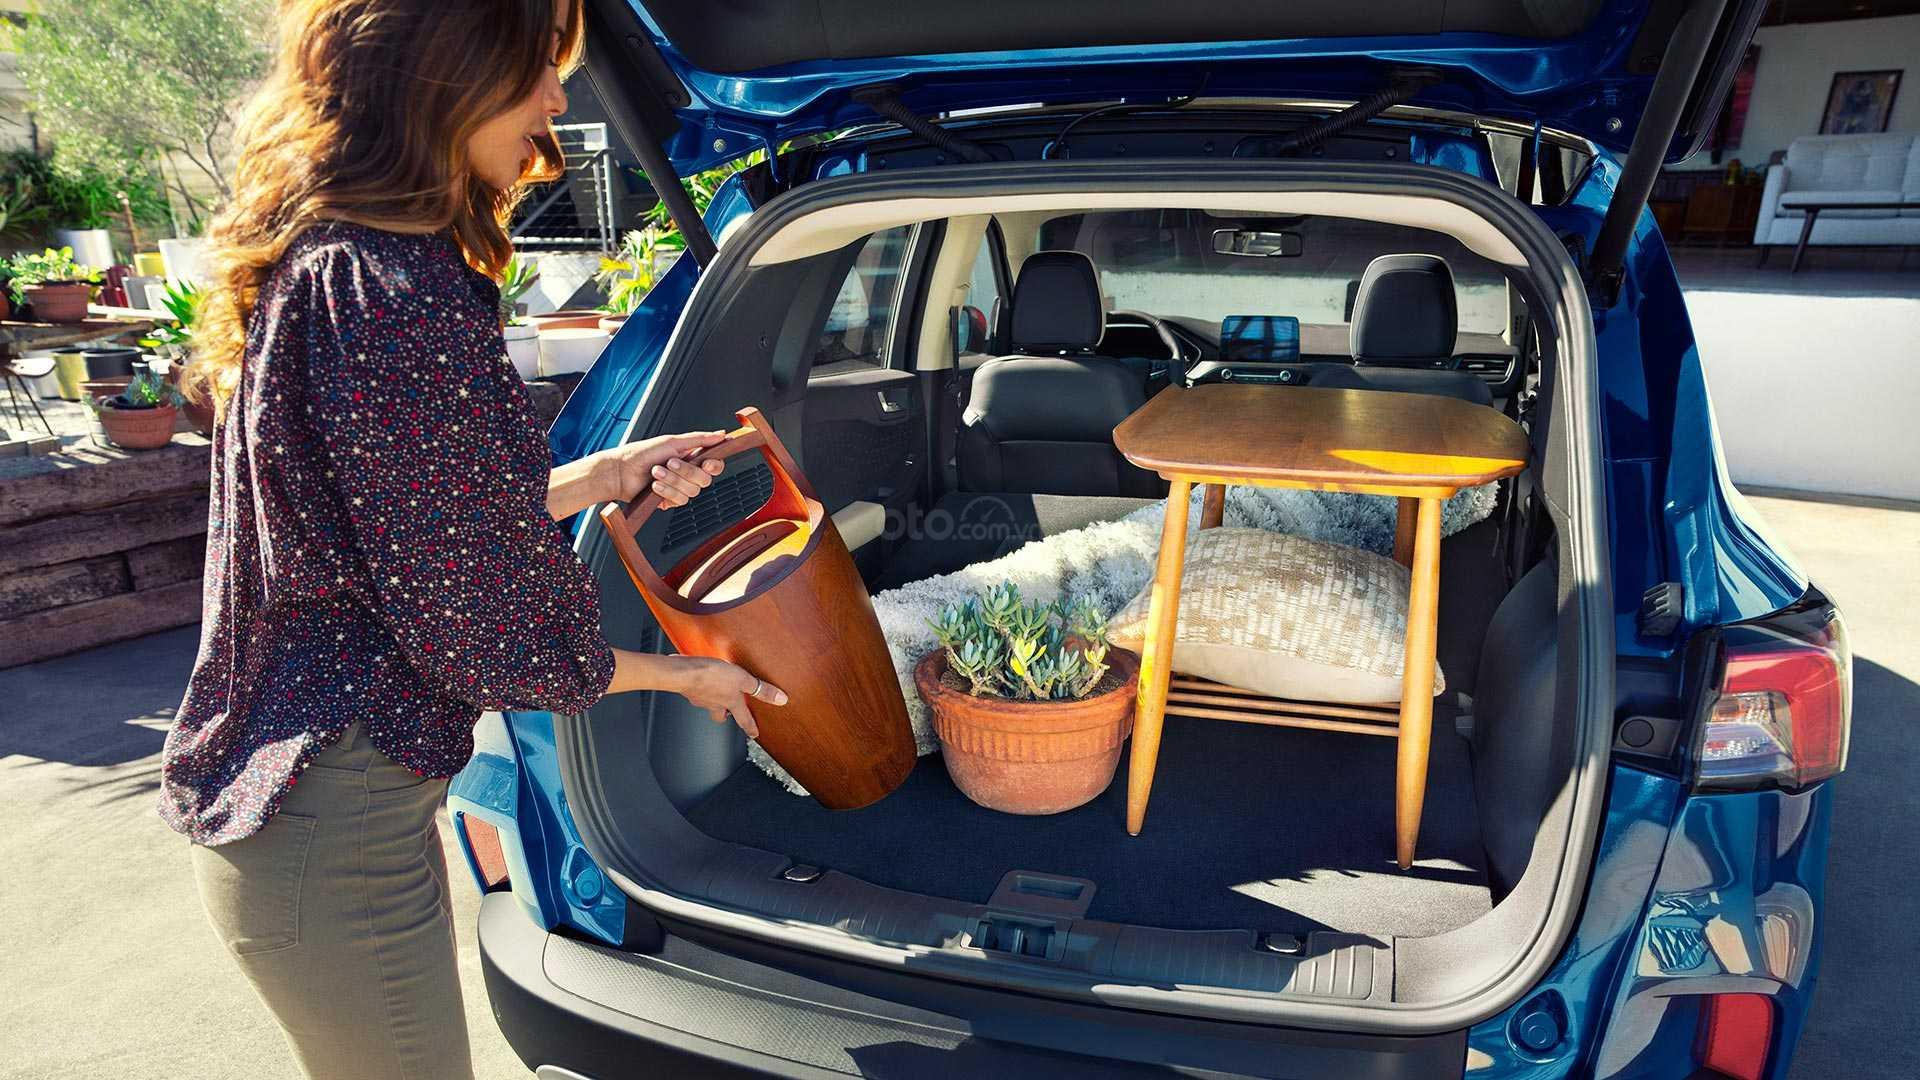 Đánh giá xe Ford Escape 2020 về thể tích khoang hành lý.